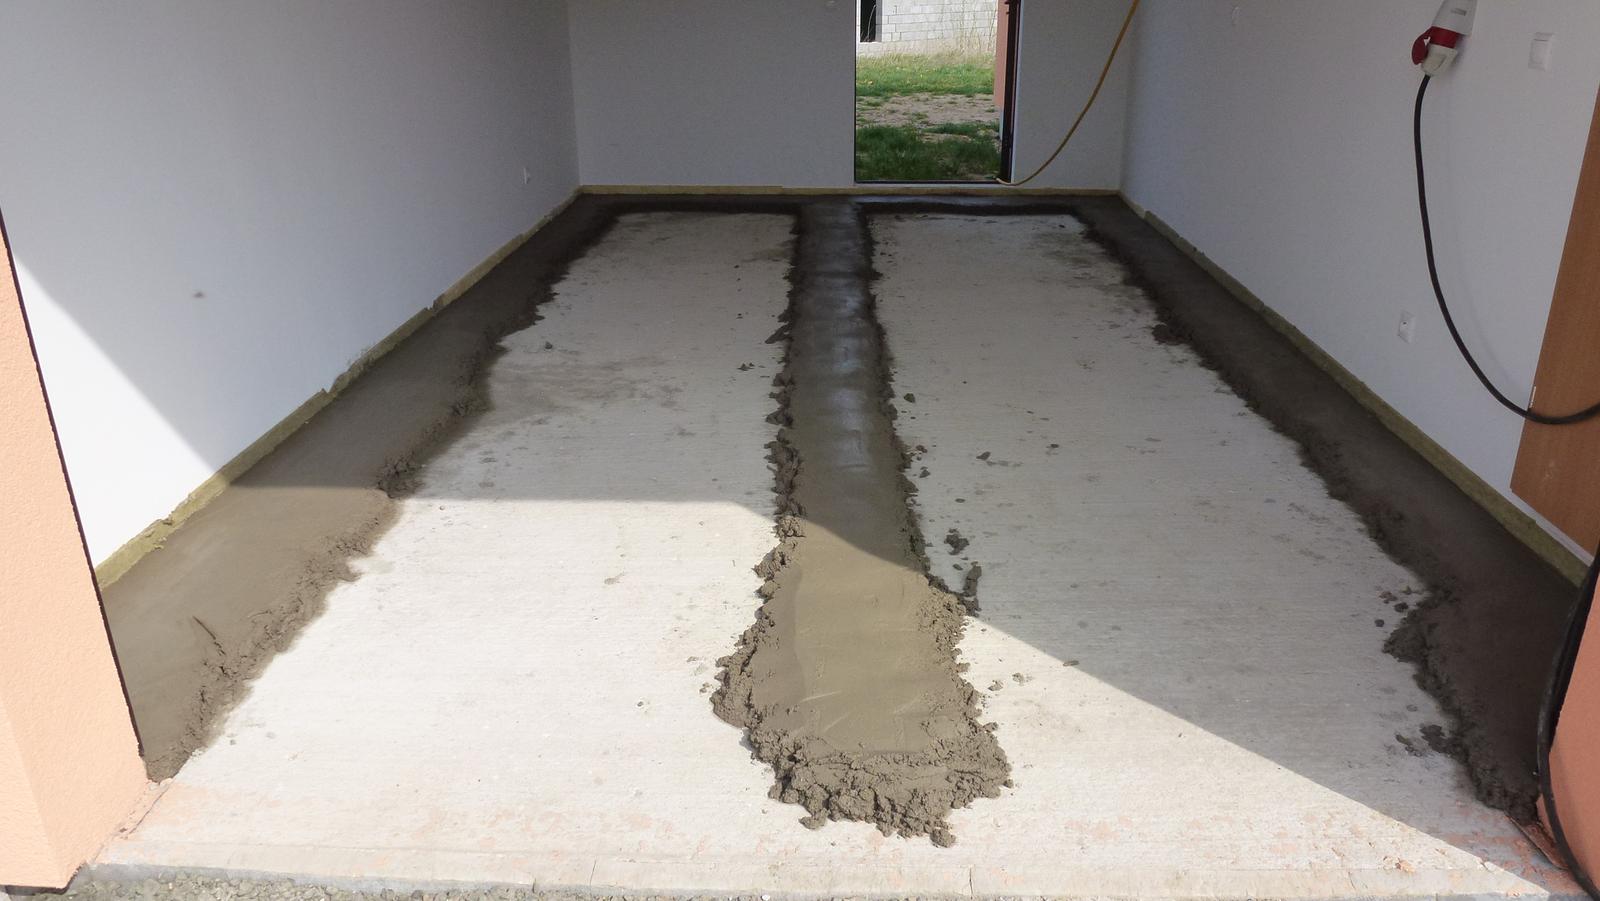 Nova 101 - zahrada a vše okolo - 11.4.2015 - betonování podlahy garáže